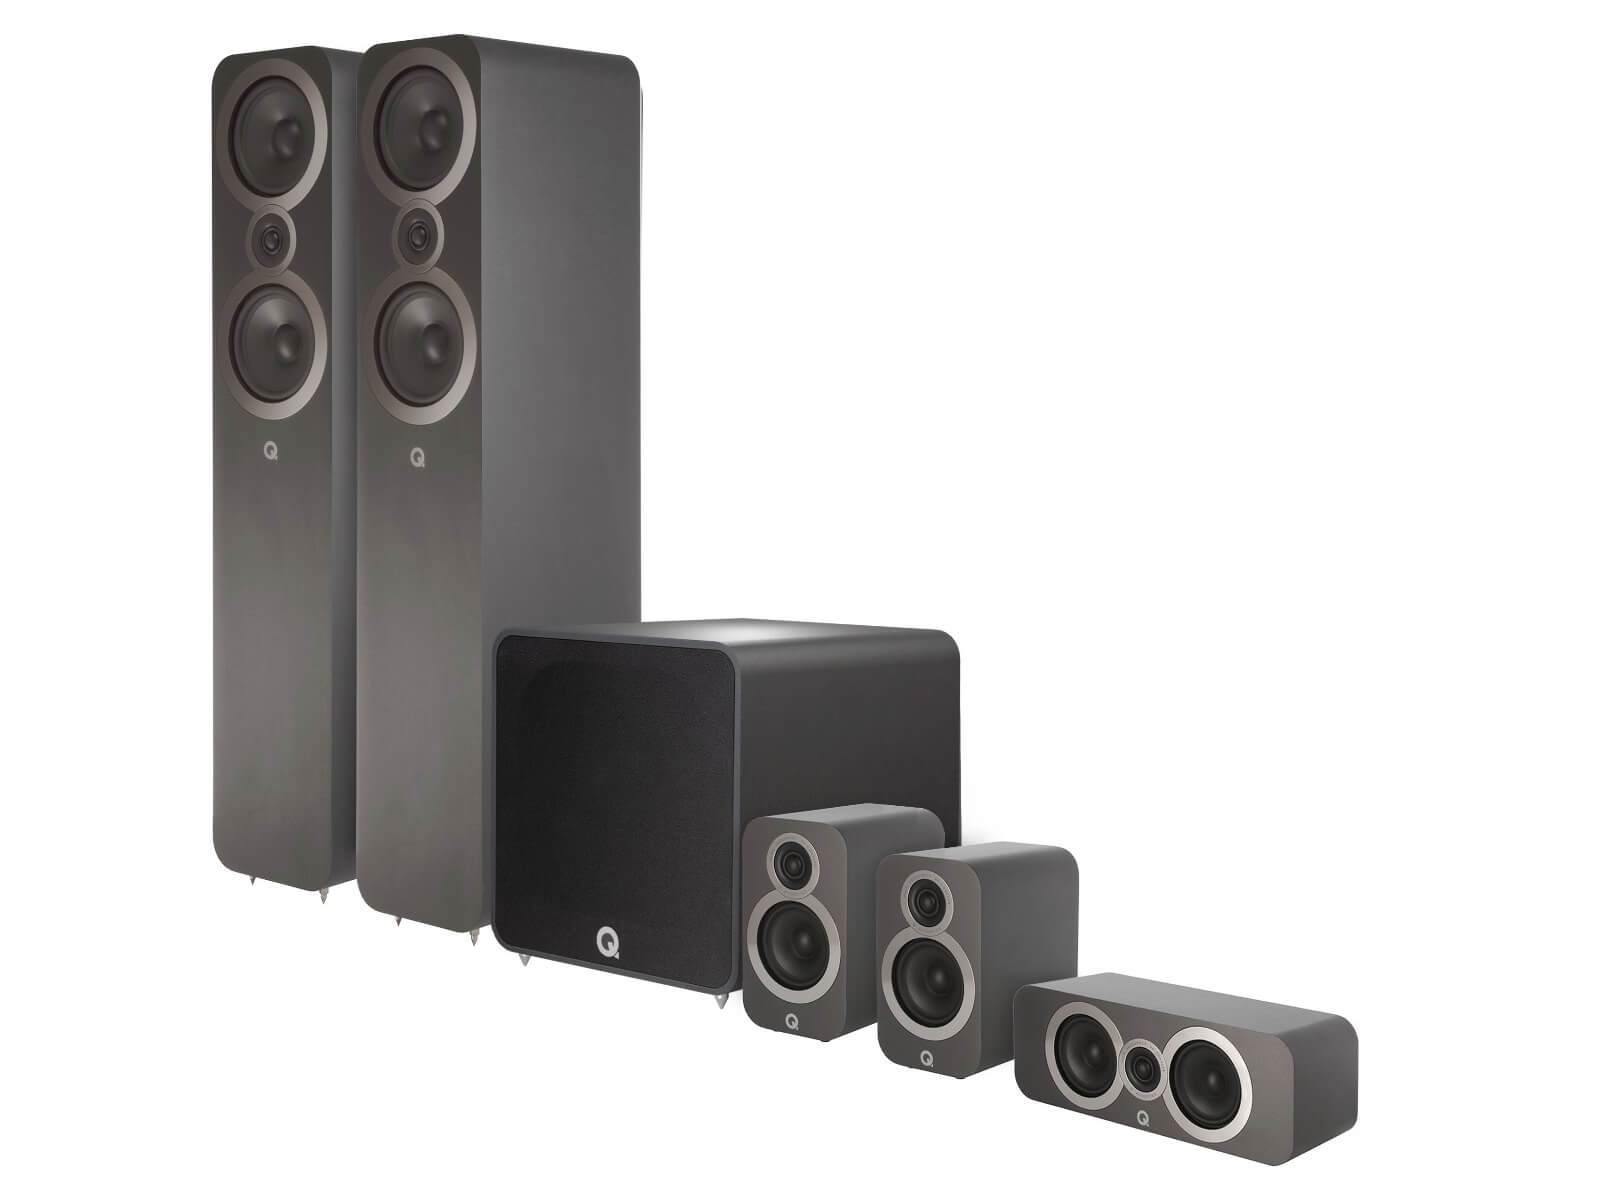 Q Acoustics 3050i Plus 5.1 - Home Cinema Speakers - Graphite